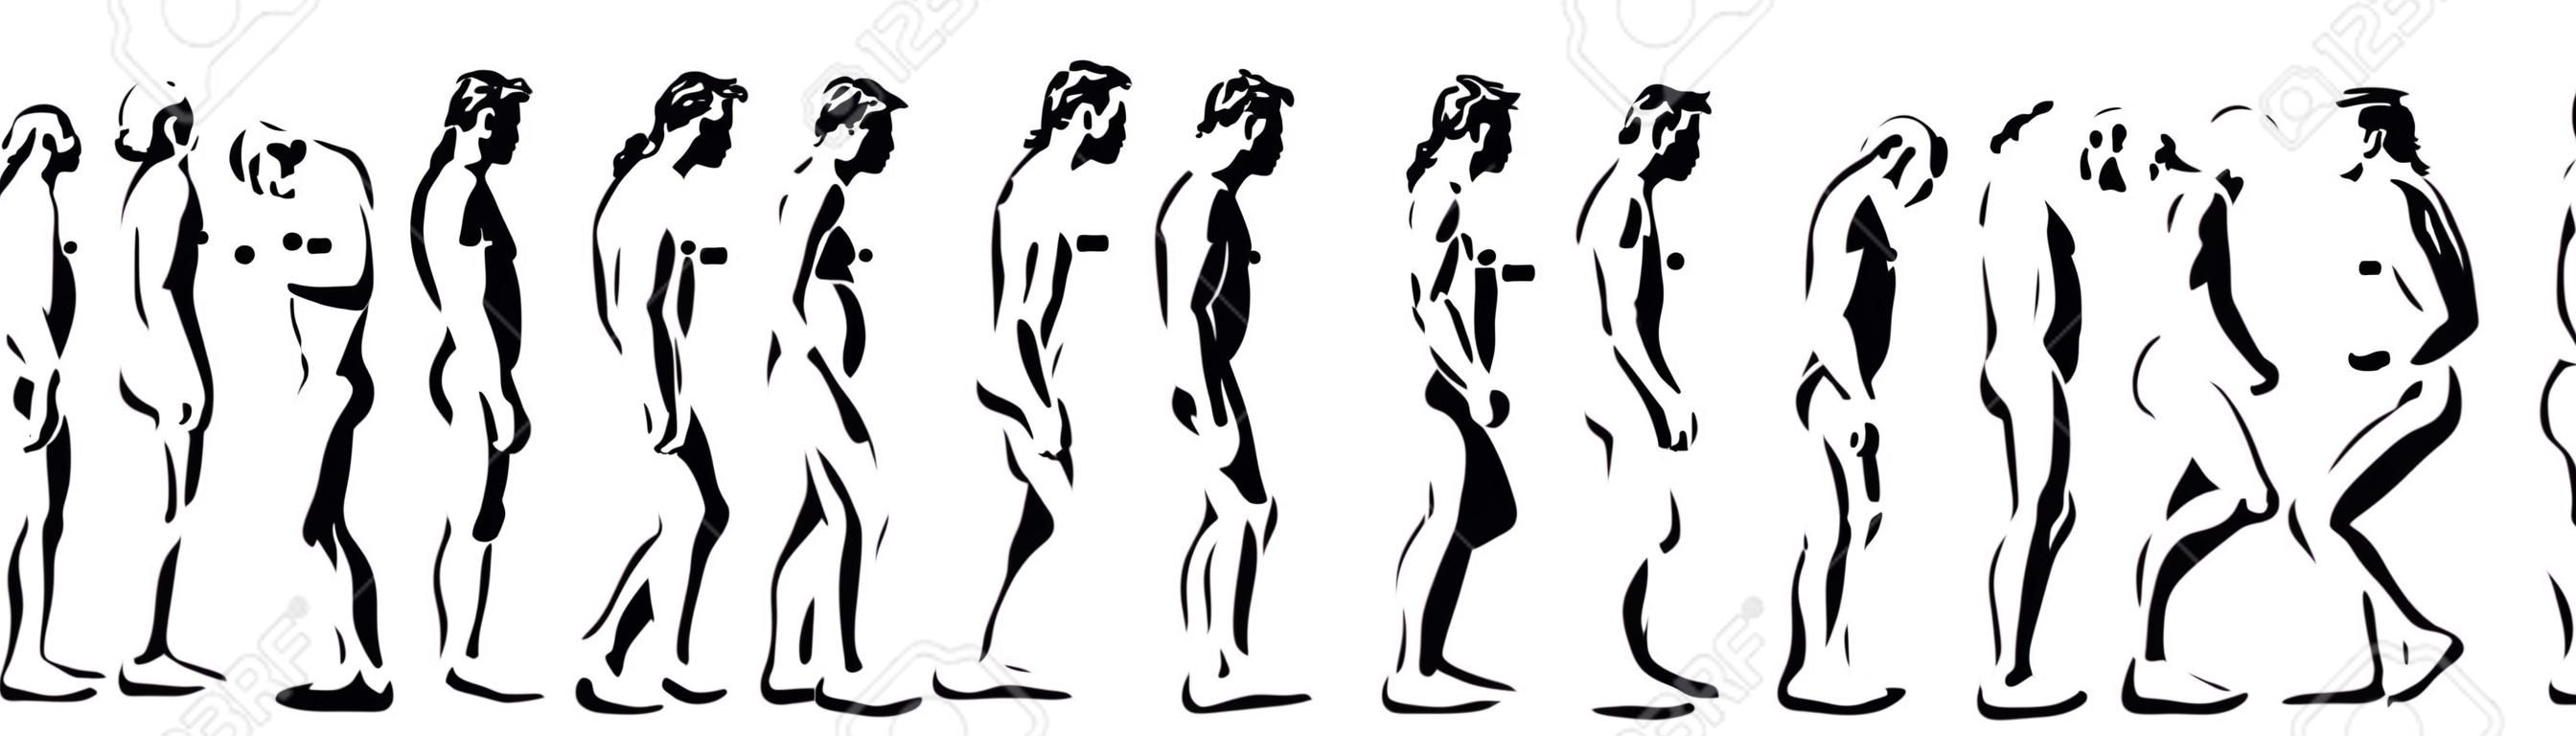 evoluzione umana tempo dal computer illustrazione